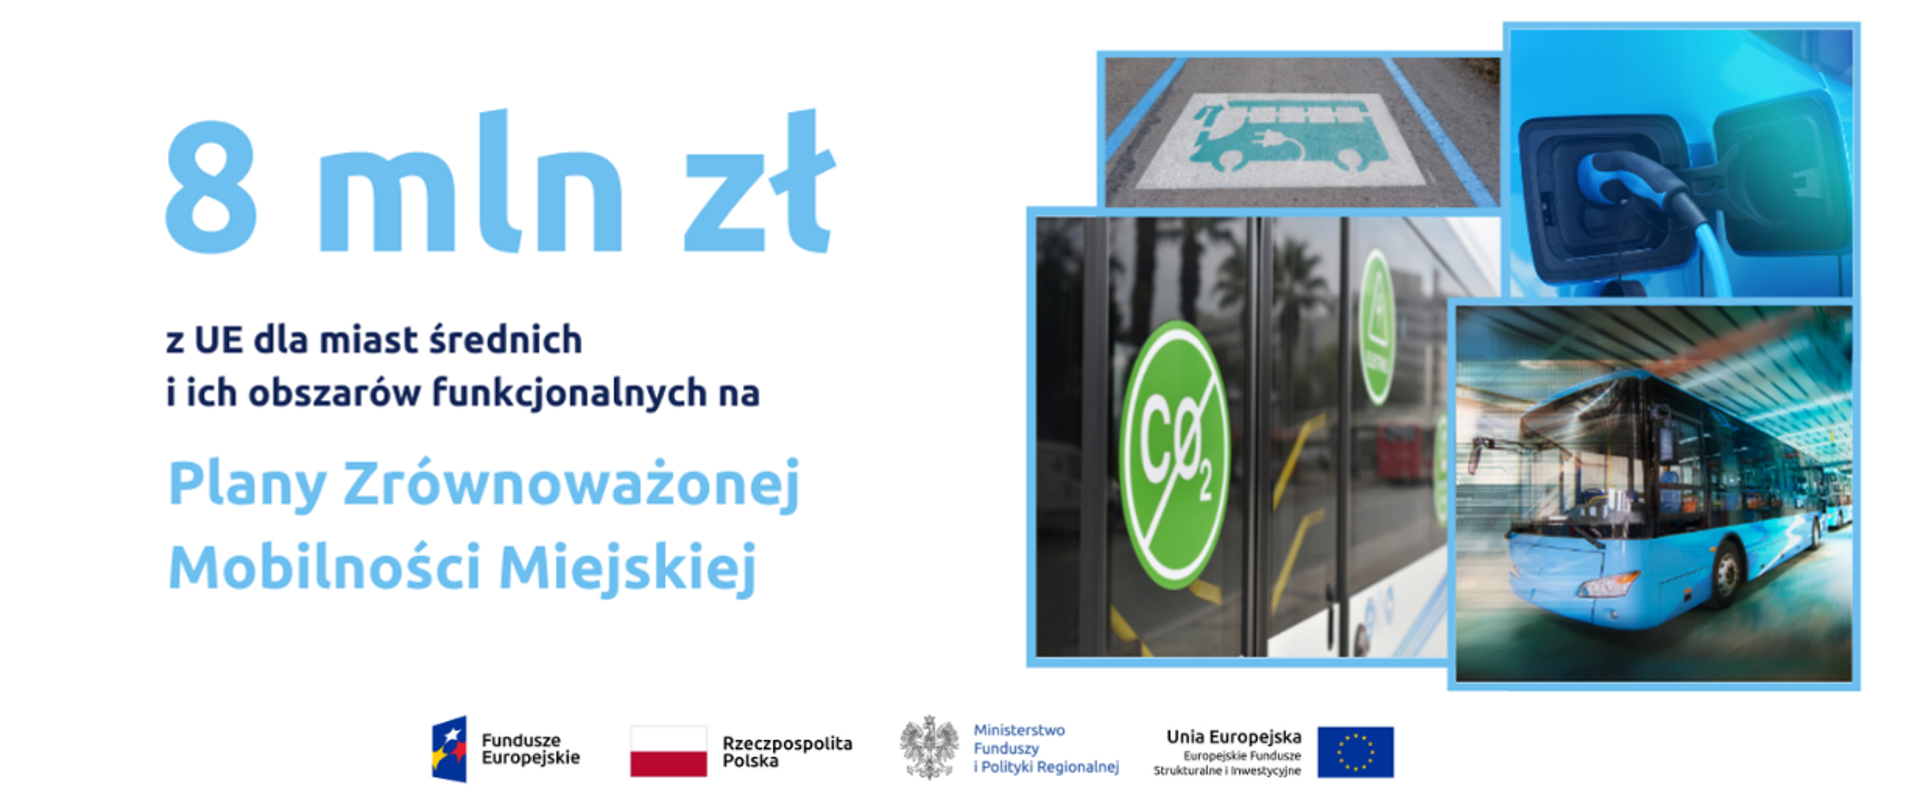 Po lewej napis: "8 mln zł z UE dla miast średnich i ich obszarów funkcjonalnych na Plany Zrównoważonej Mobilności Miejskiej". Obok cztery obrazki ilustrujące transport w mieście. 